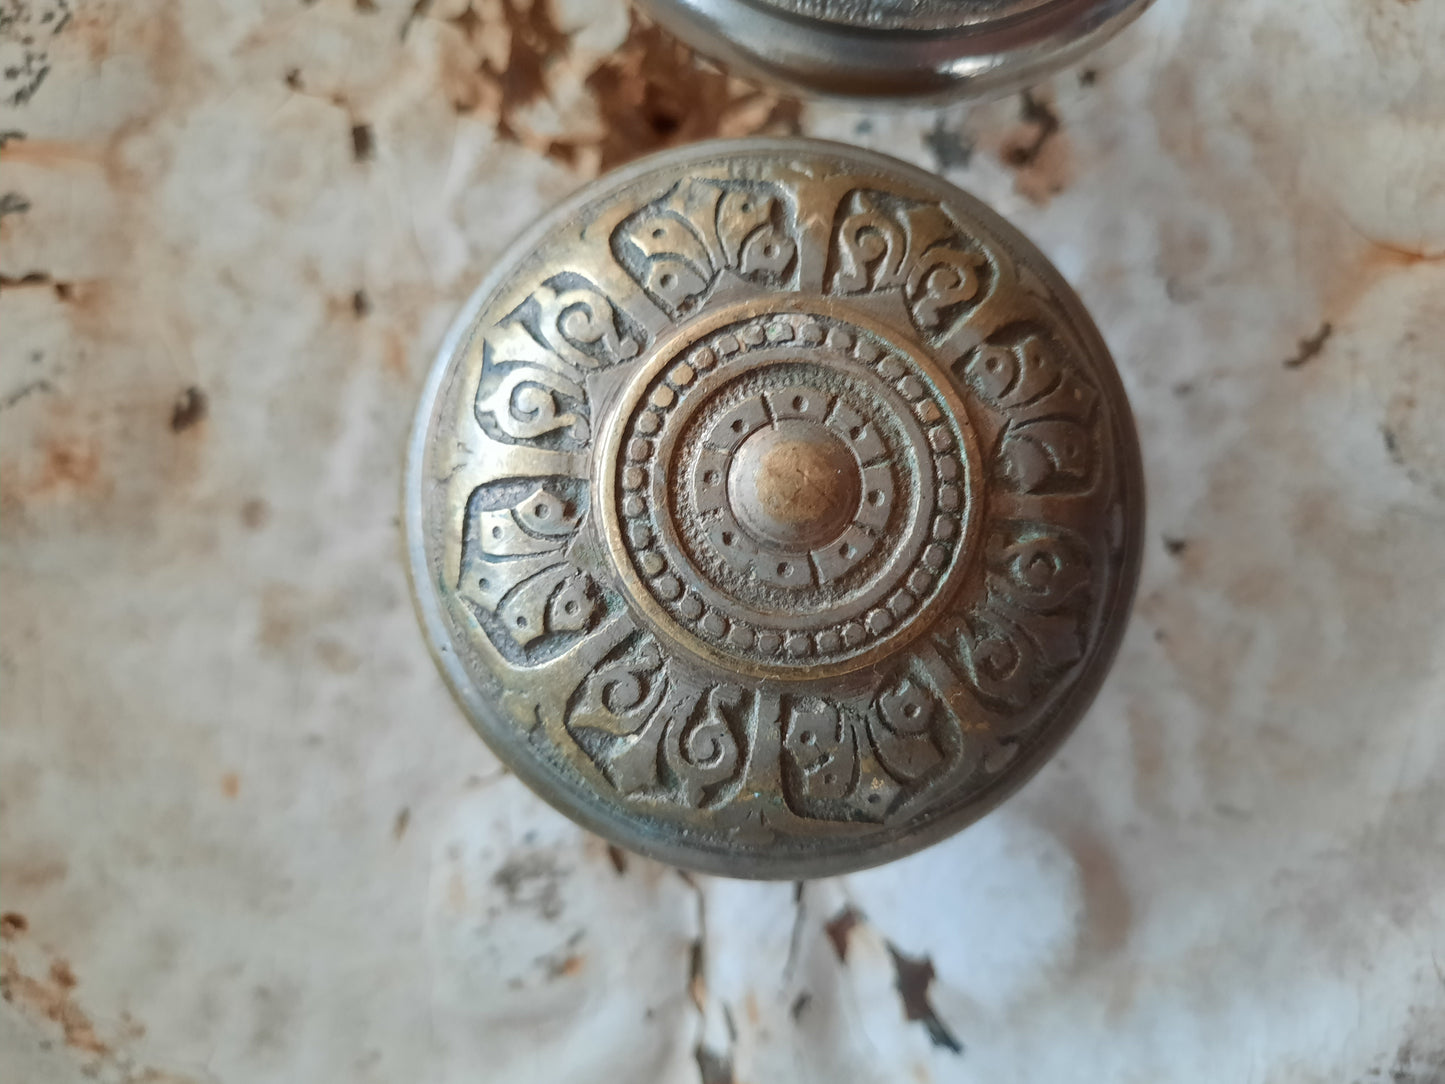 Pair of Antique Nickel Plated 1870s Doorknobs, Silver Metal Door Knobs with Fancy Design